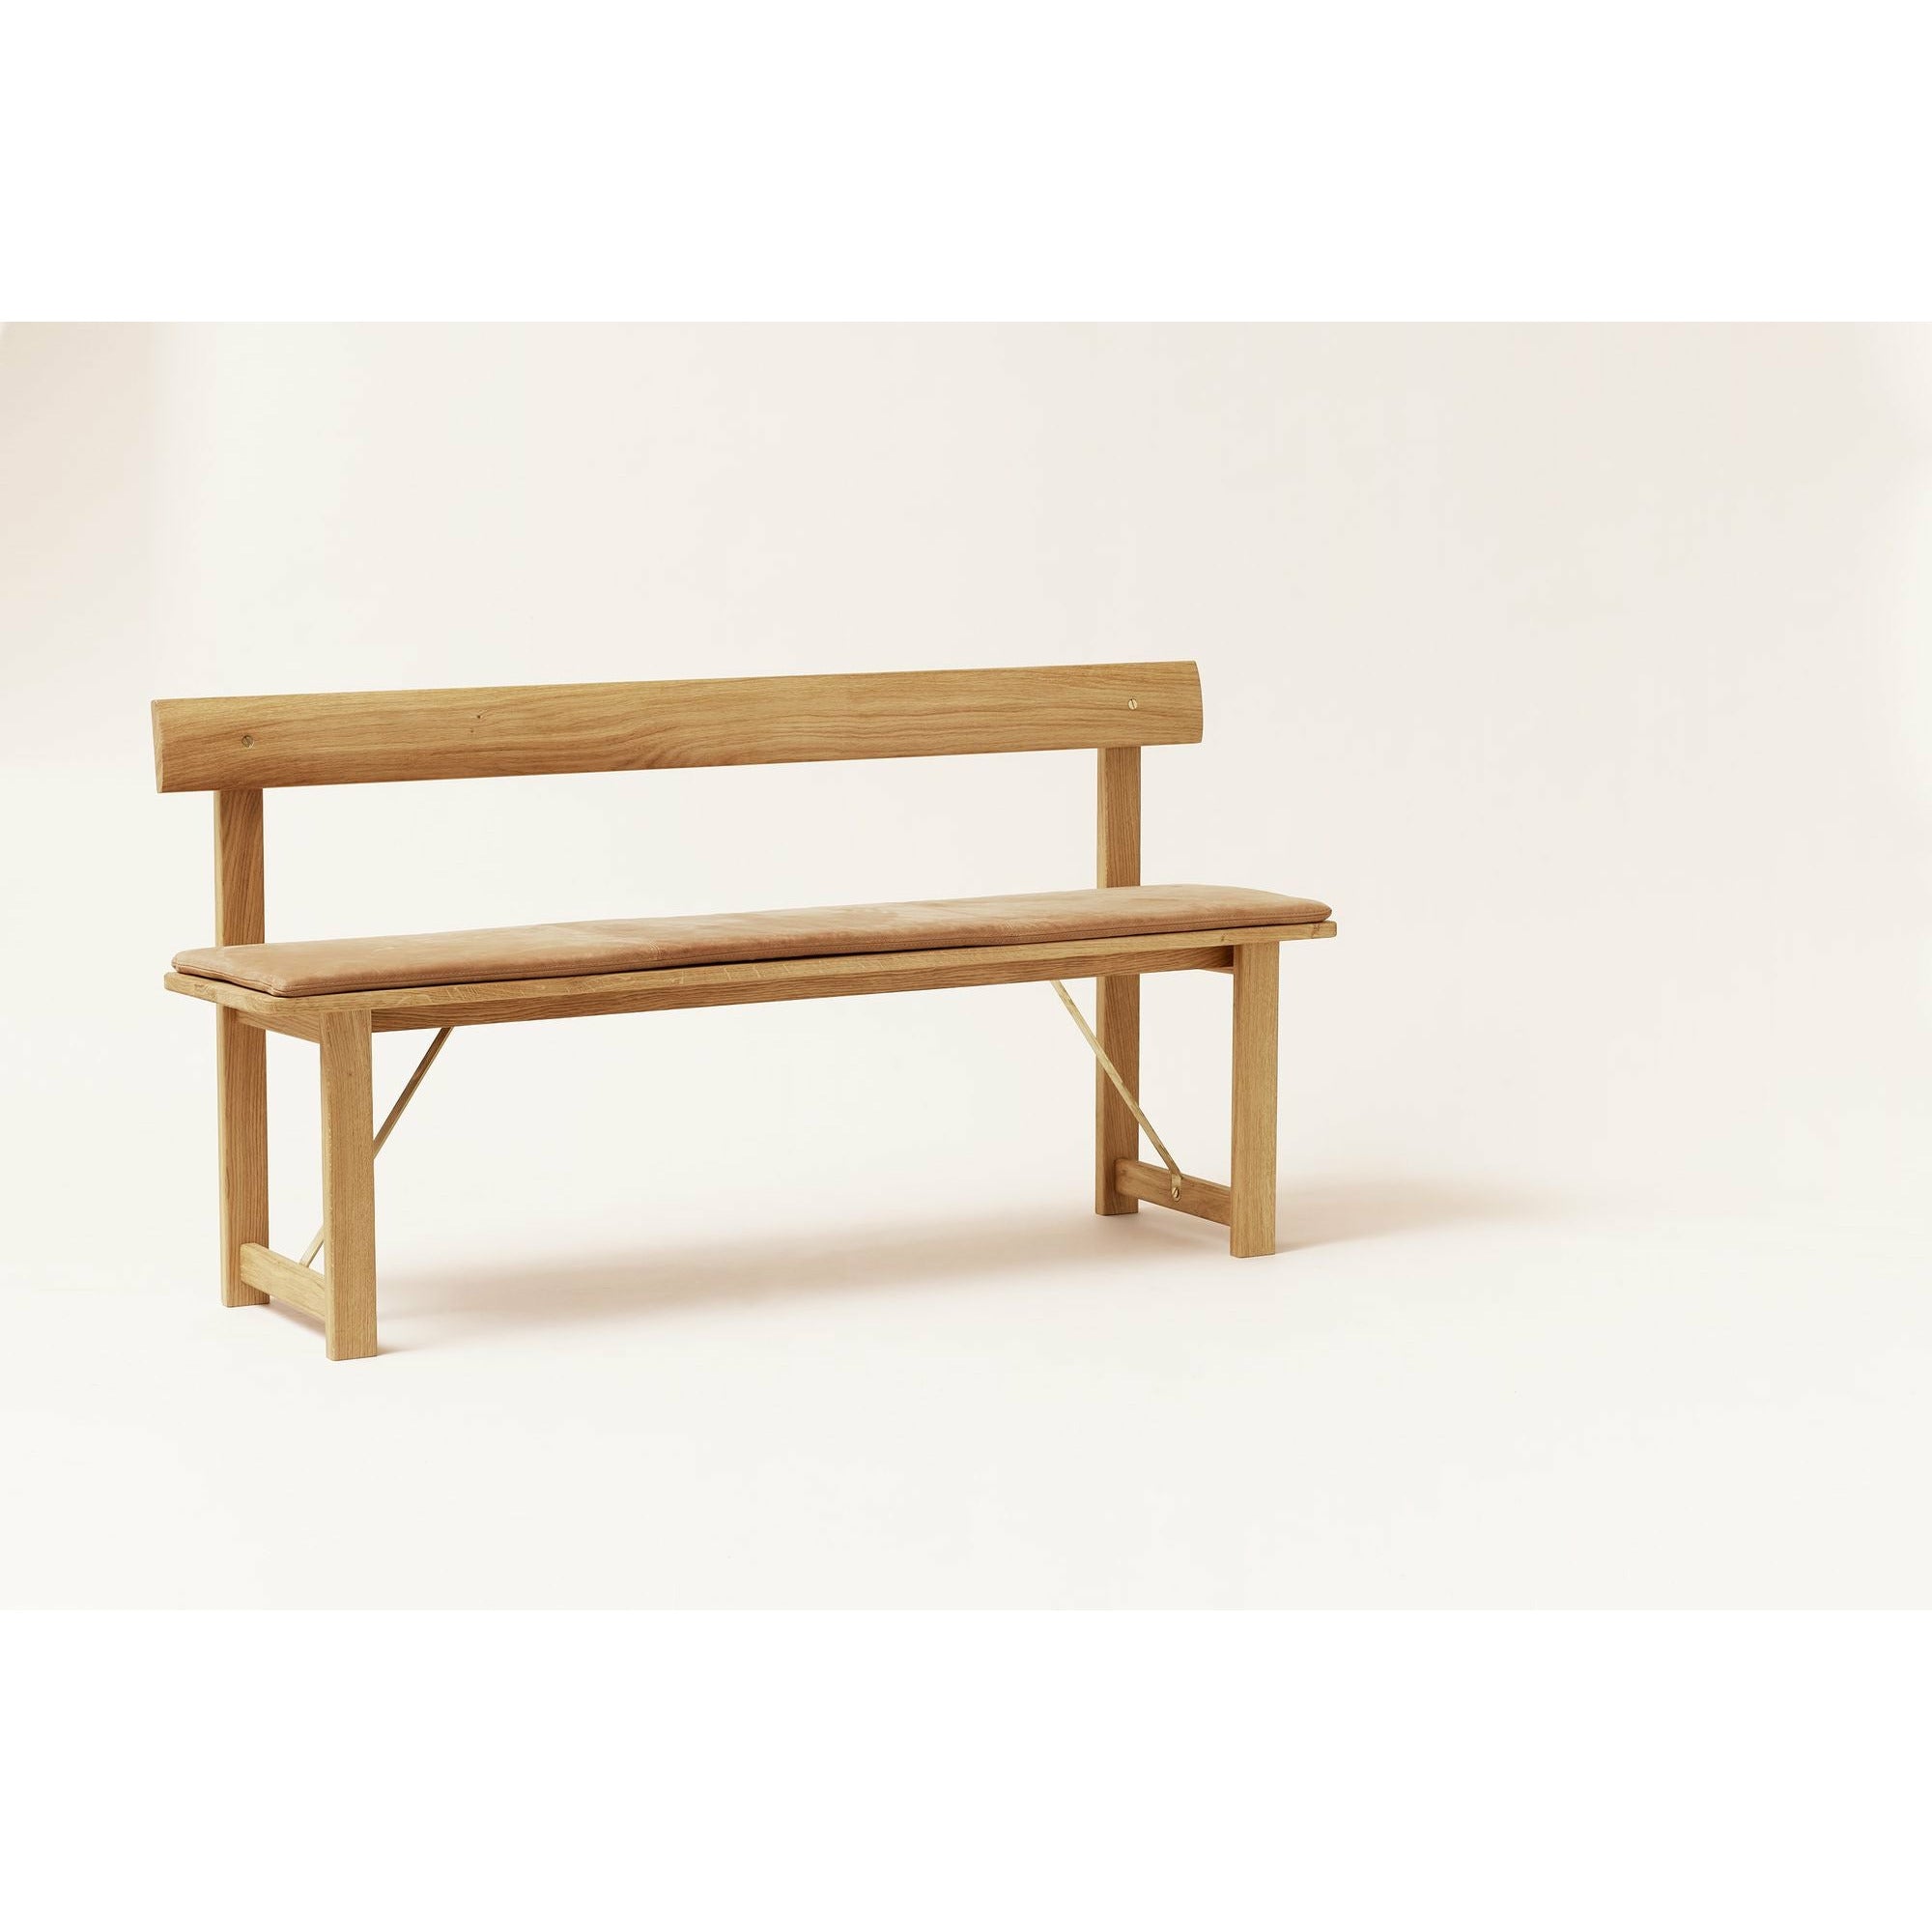 Form & Refine Position Bench 155 Cm. Oak